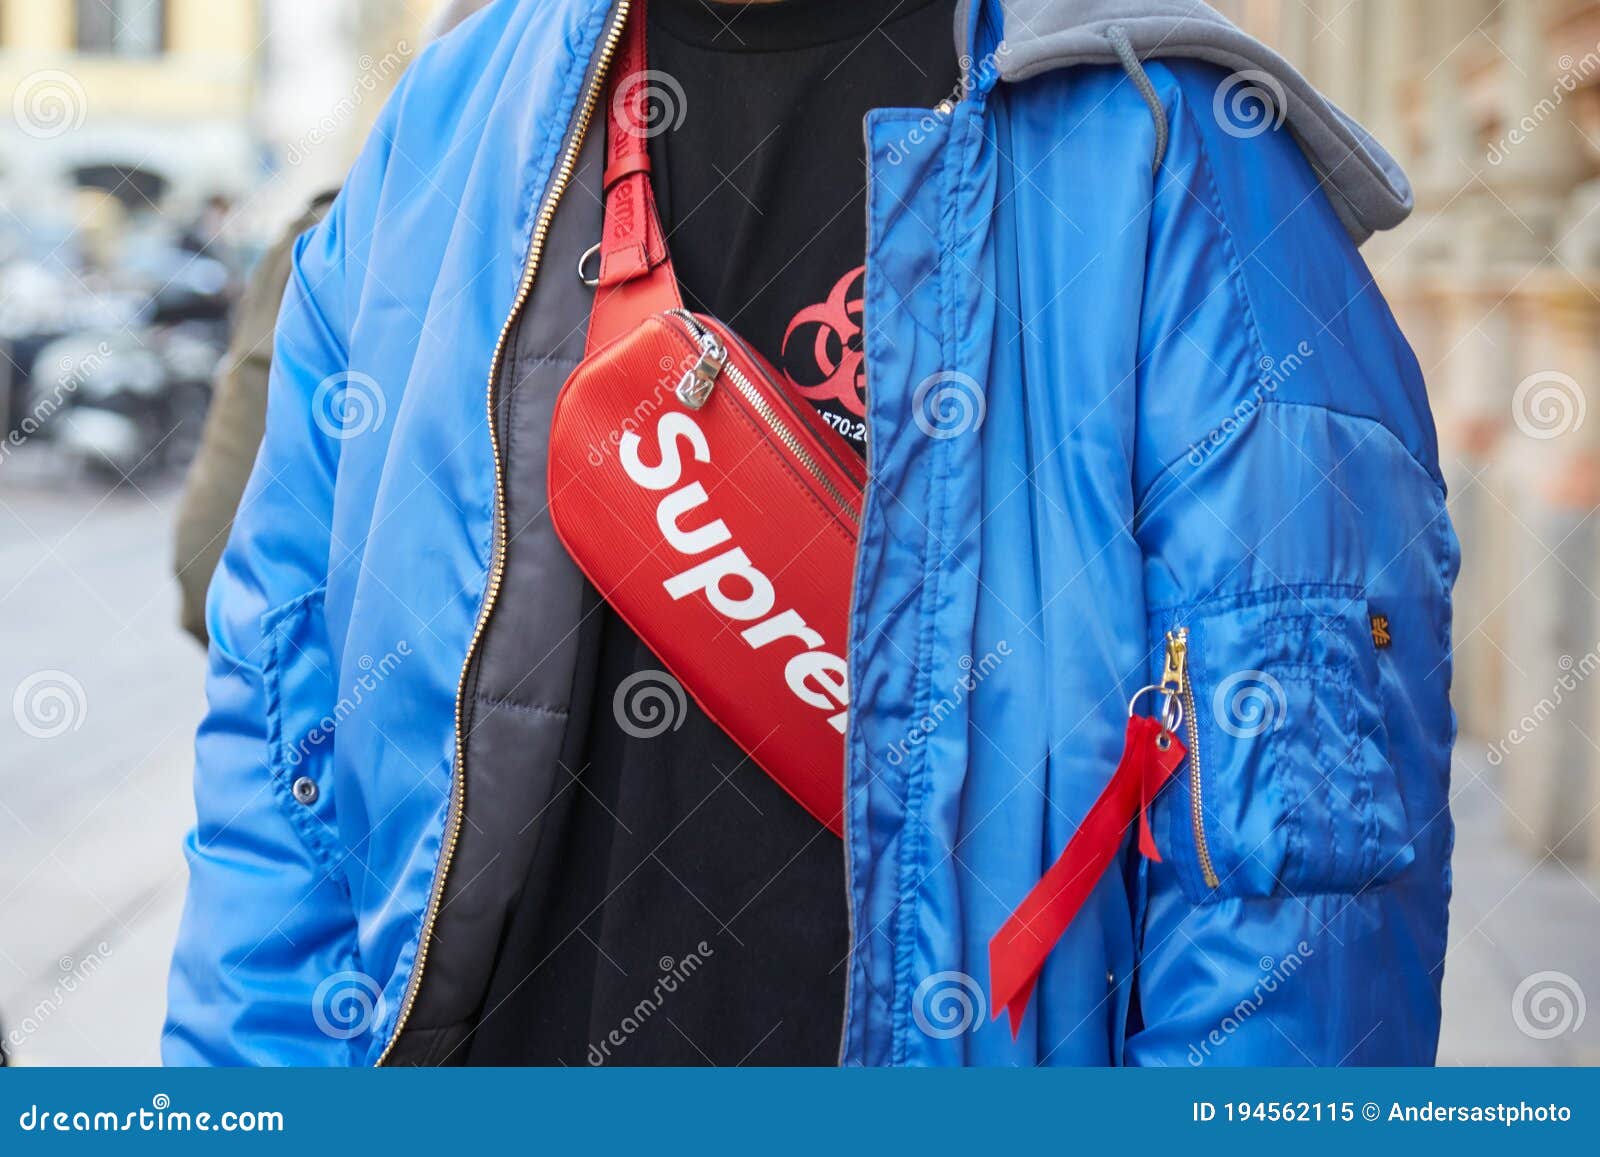 red supreme bomber jacket